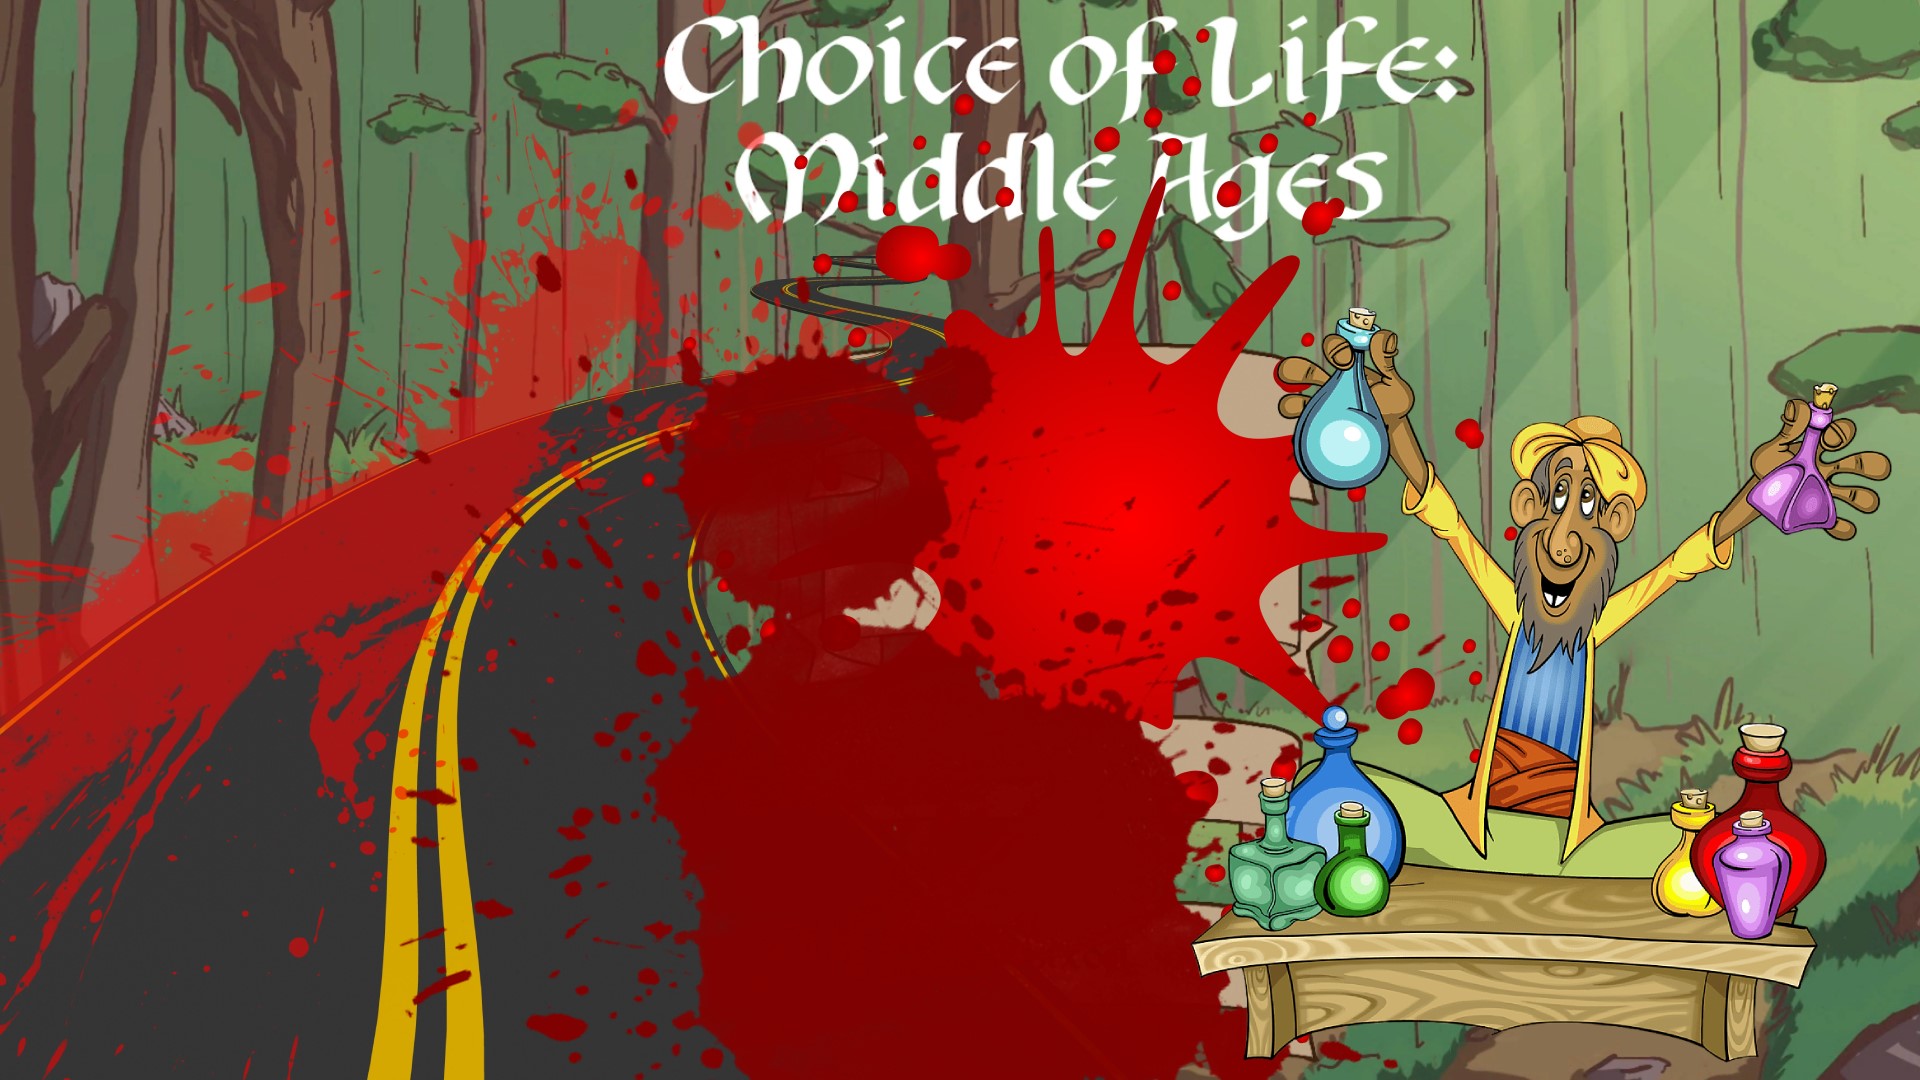 КРОВАВЫЙ ПУТЬ К ПРЕДПРИНИМАТЕЛЬСТВУ ▻ The Choice of Life Middle Ages #3